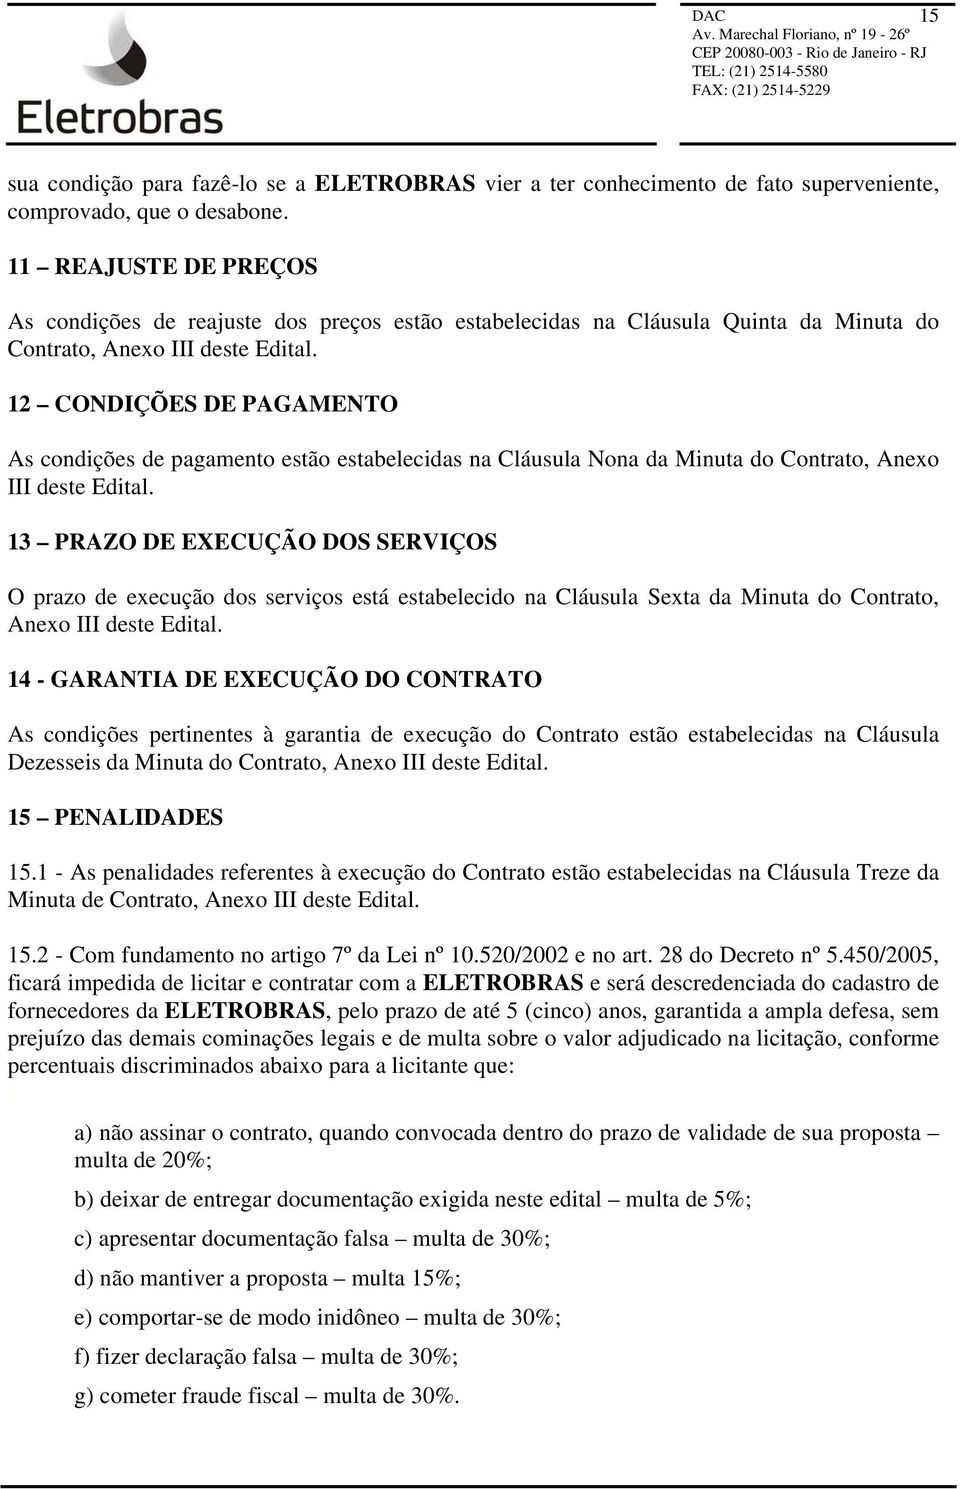 12 CONDIÇÕES DE PAGAMENTO As condições de pagamento estão estabelecidas na Cláusula Nona da Minuta do Contrato, Anexo III deste Edital.